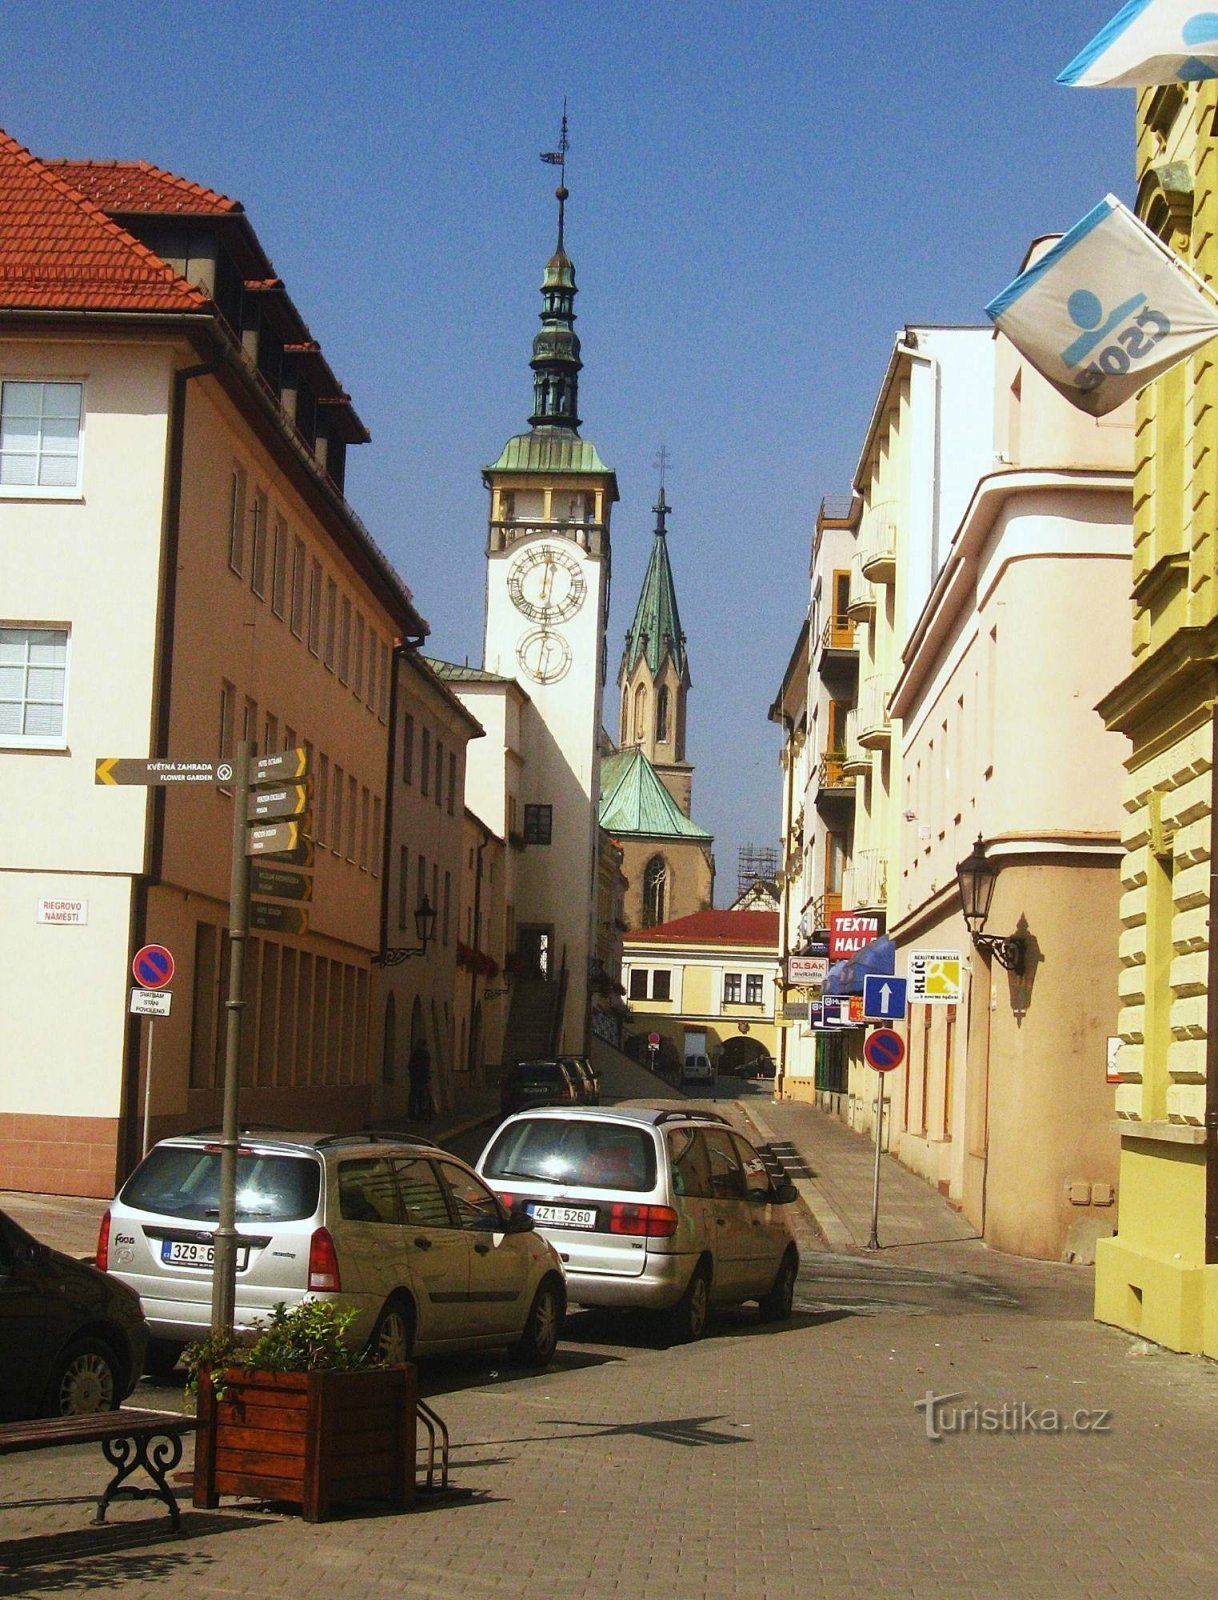 Prefeitura de Kroměříž